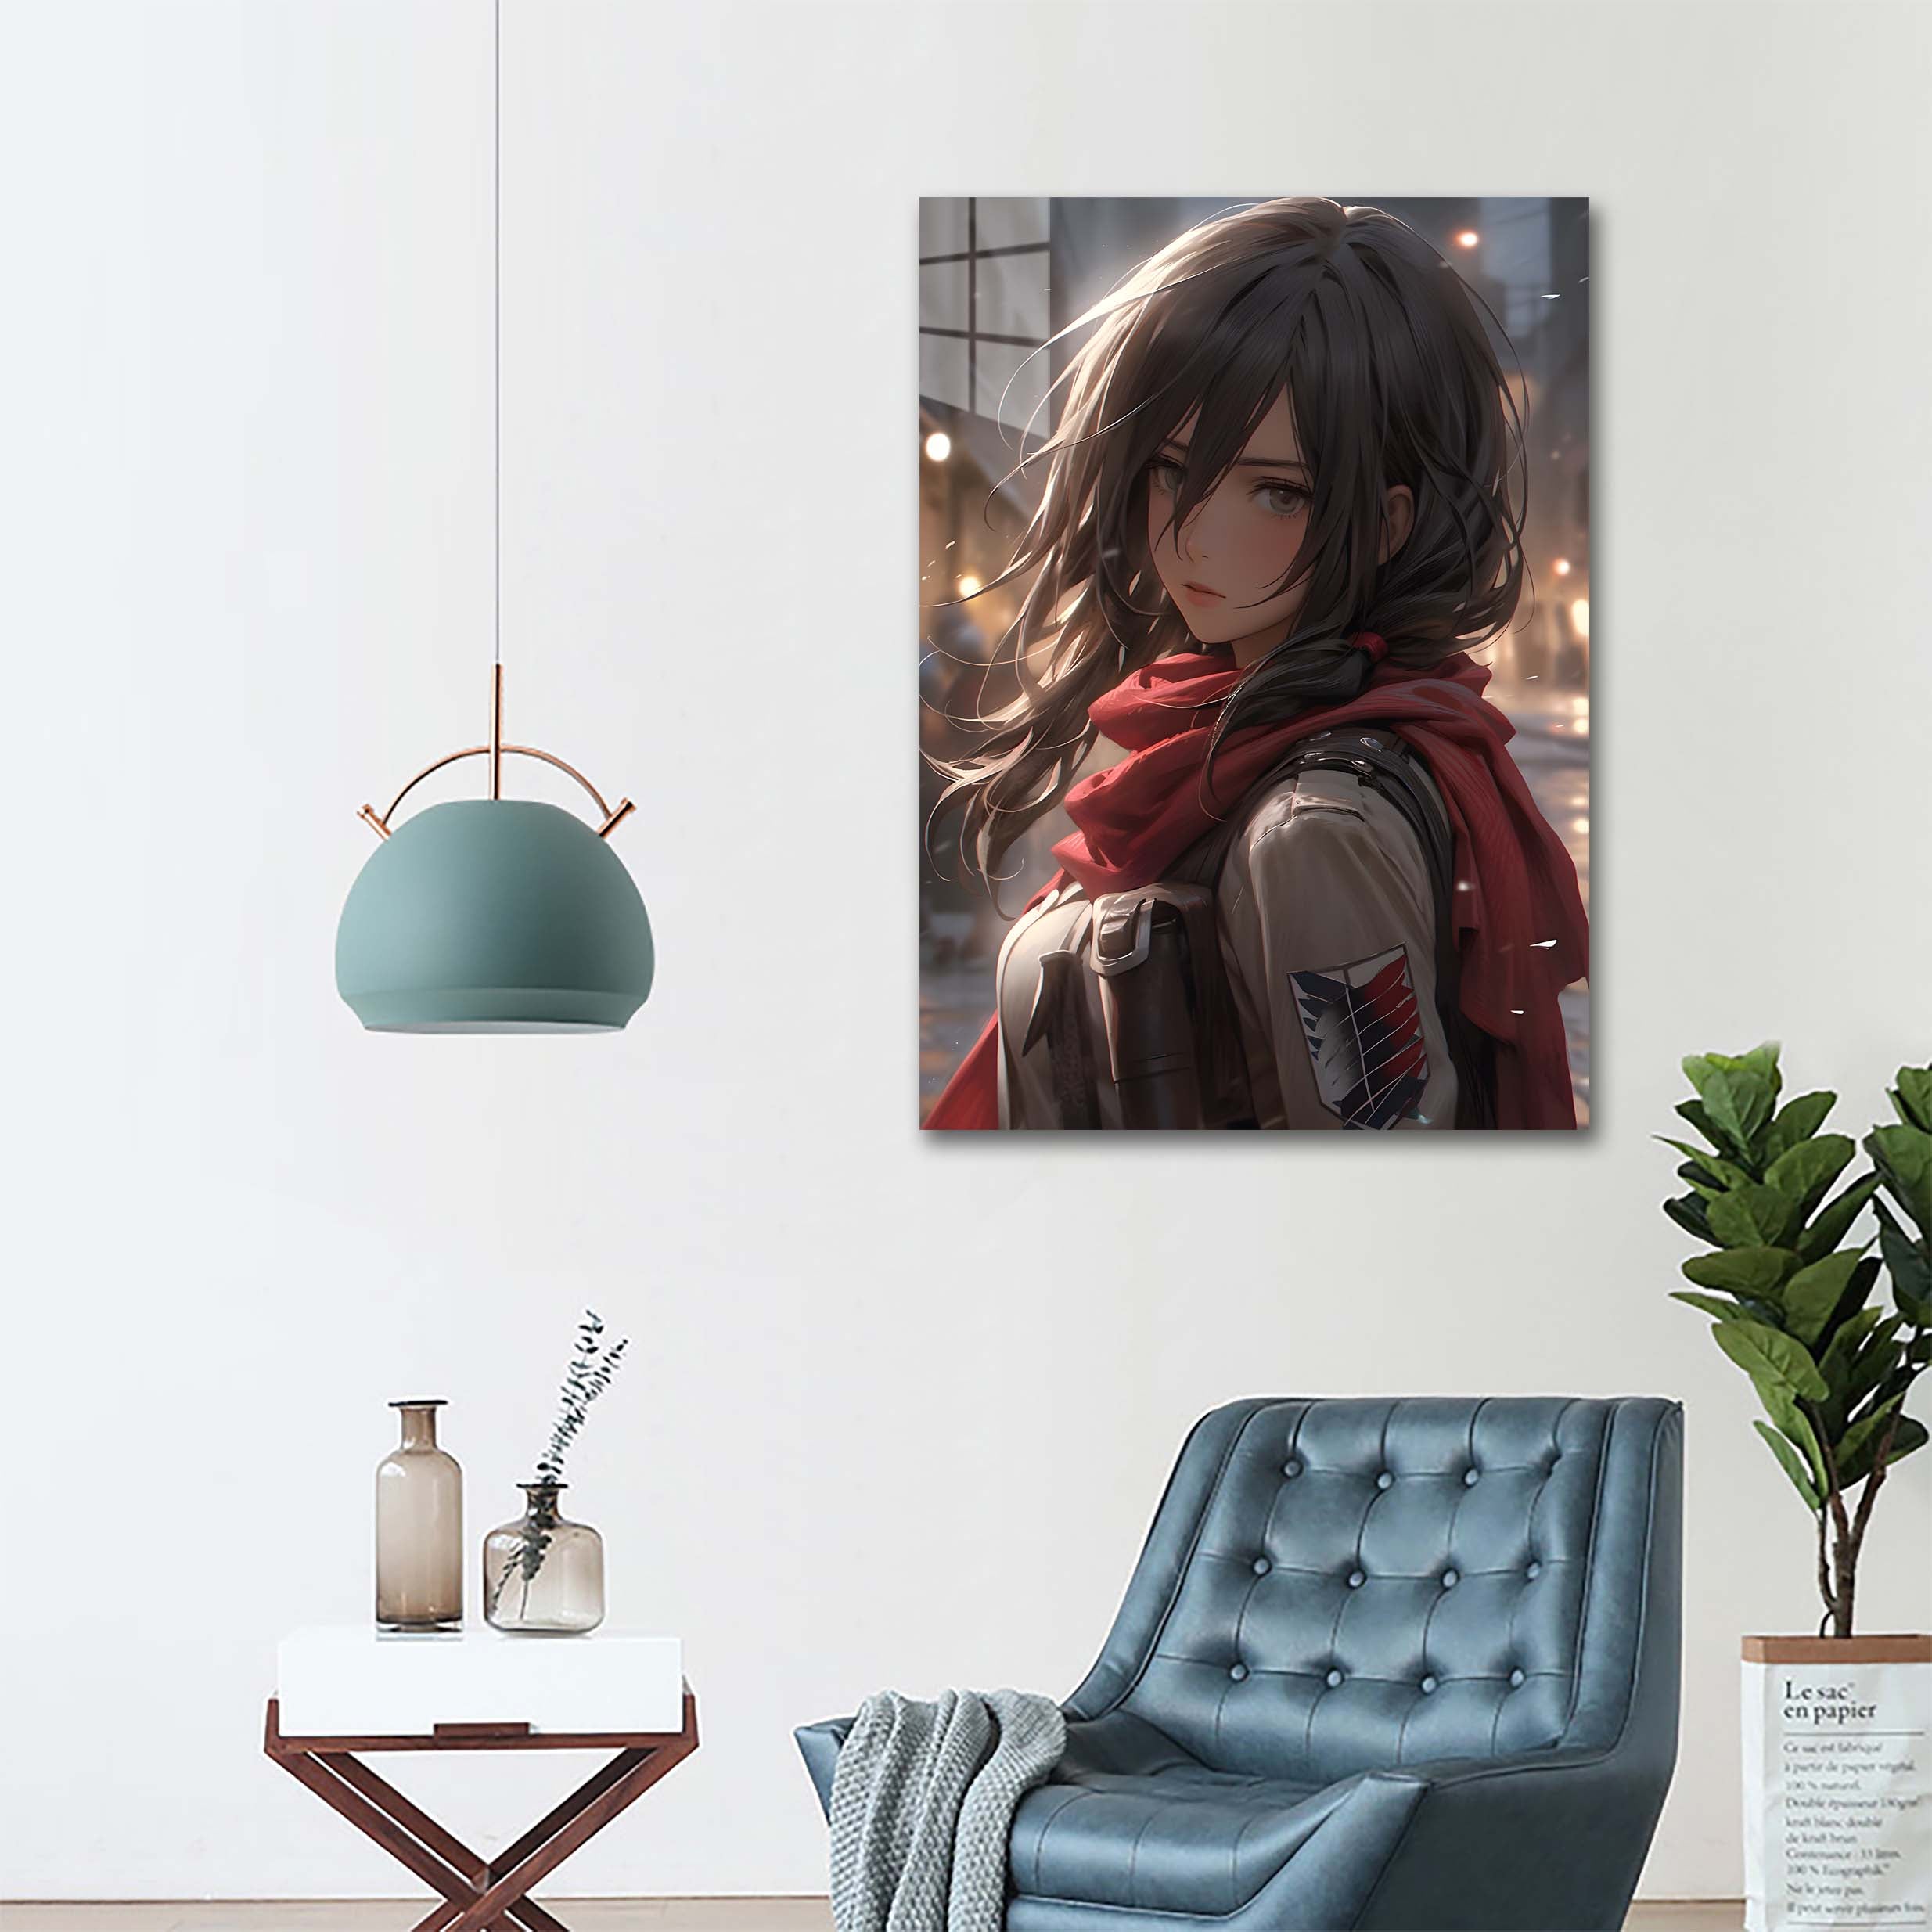 Mikasa Ackerman - AOT-designed by @Artfinity